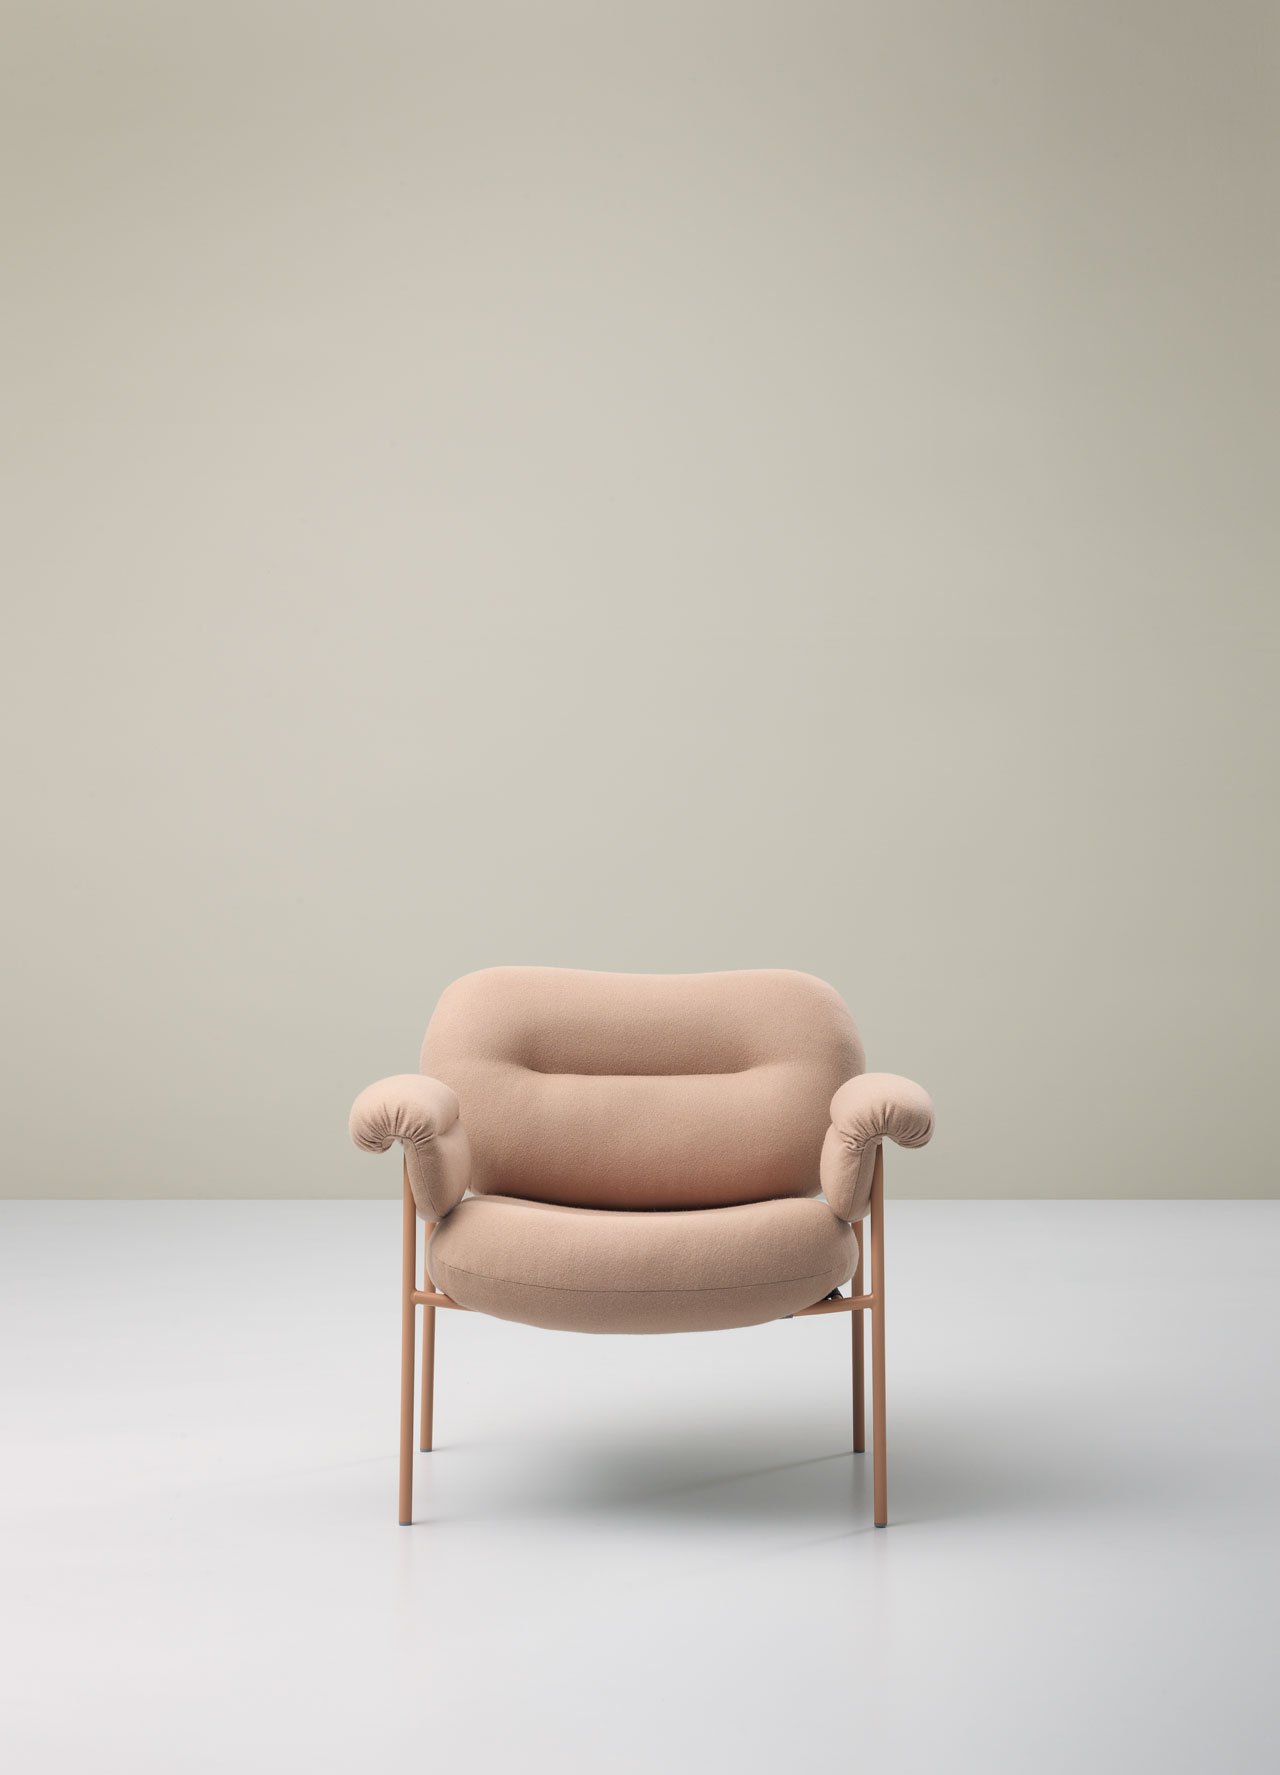 Bollo armchair by Fogia.